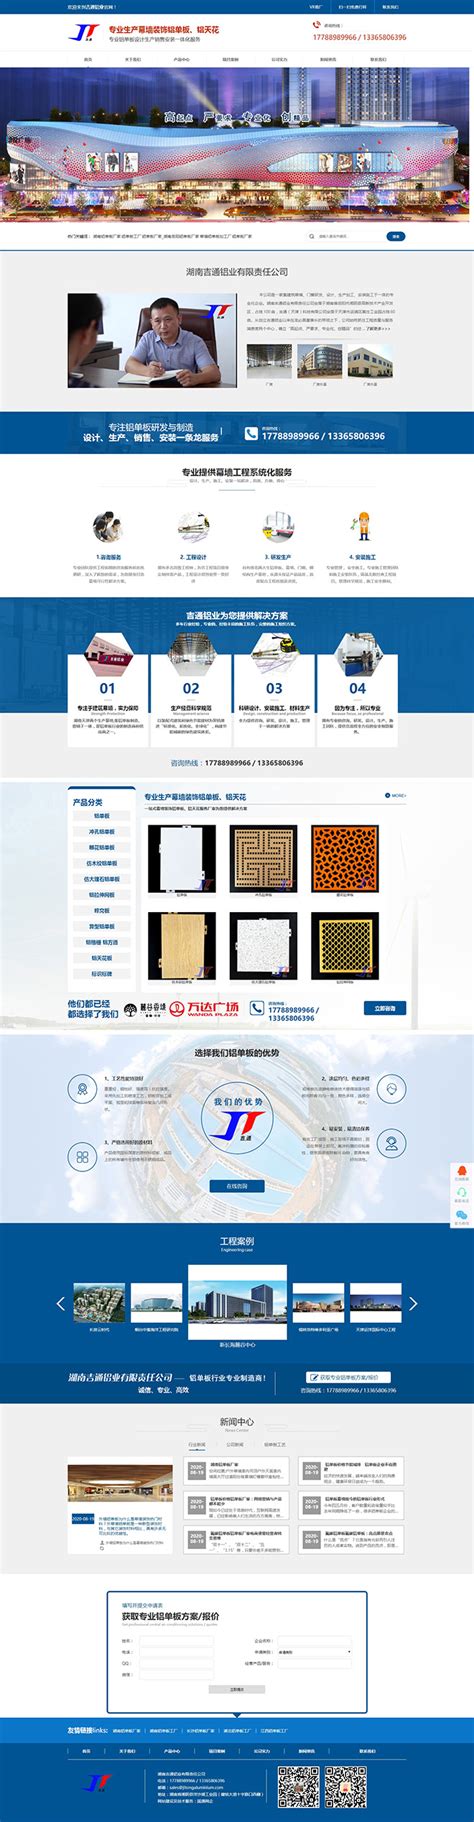 惠州网站营销建设公司